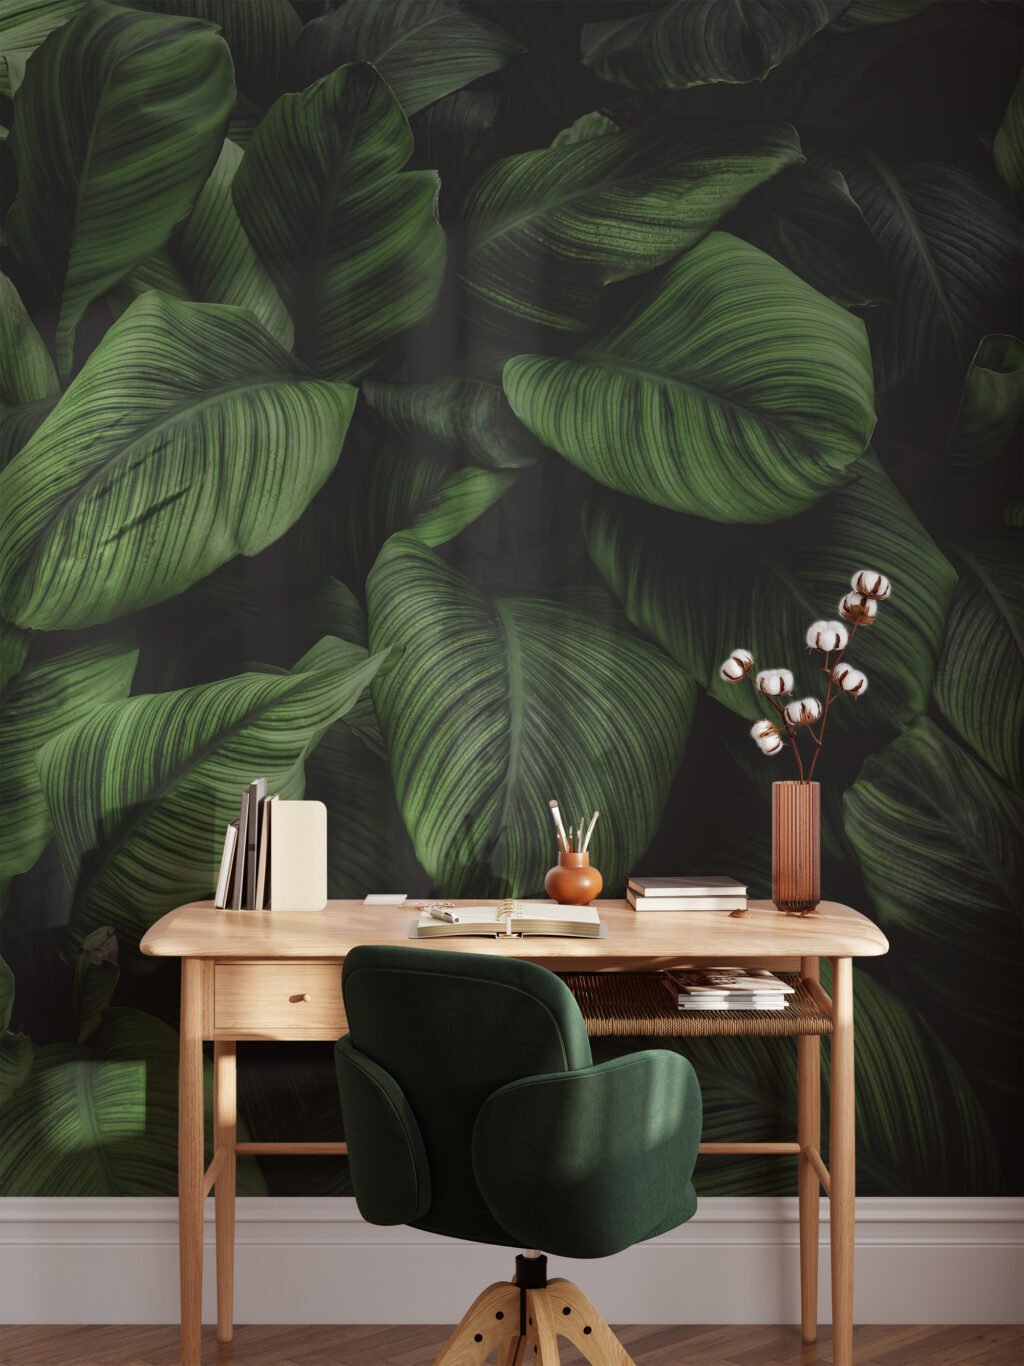 Büyük Tropikal Yapraklar Duvar Kağıdı, Koyu Yeşil Bitkiler Duvar Posteri Tropikal Duvar Kağıtları 2